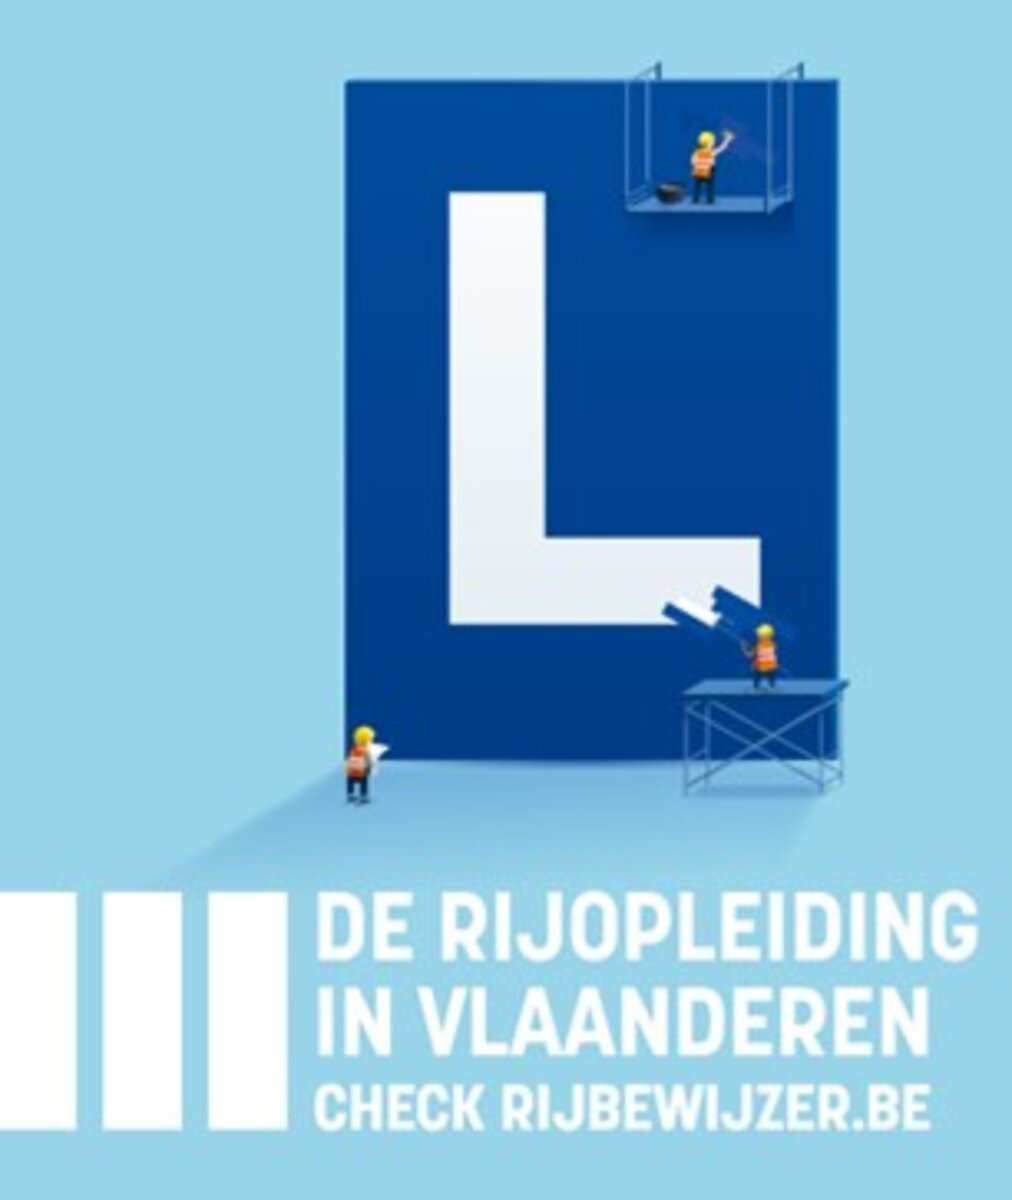 De rijopleiding in Vlaanderen